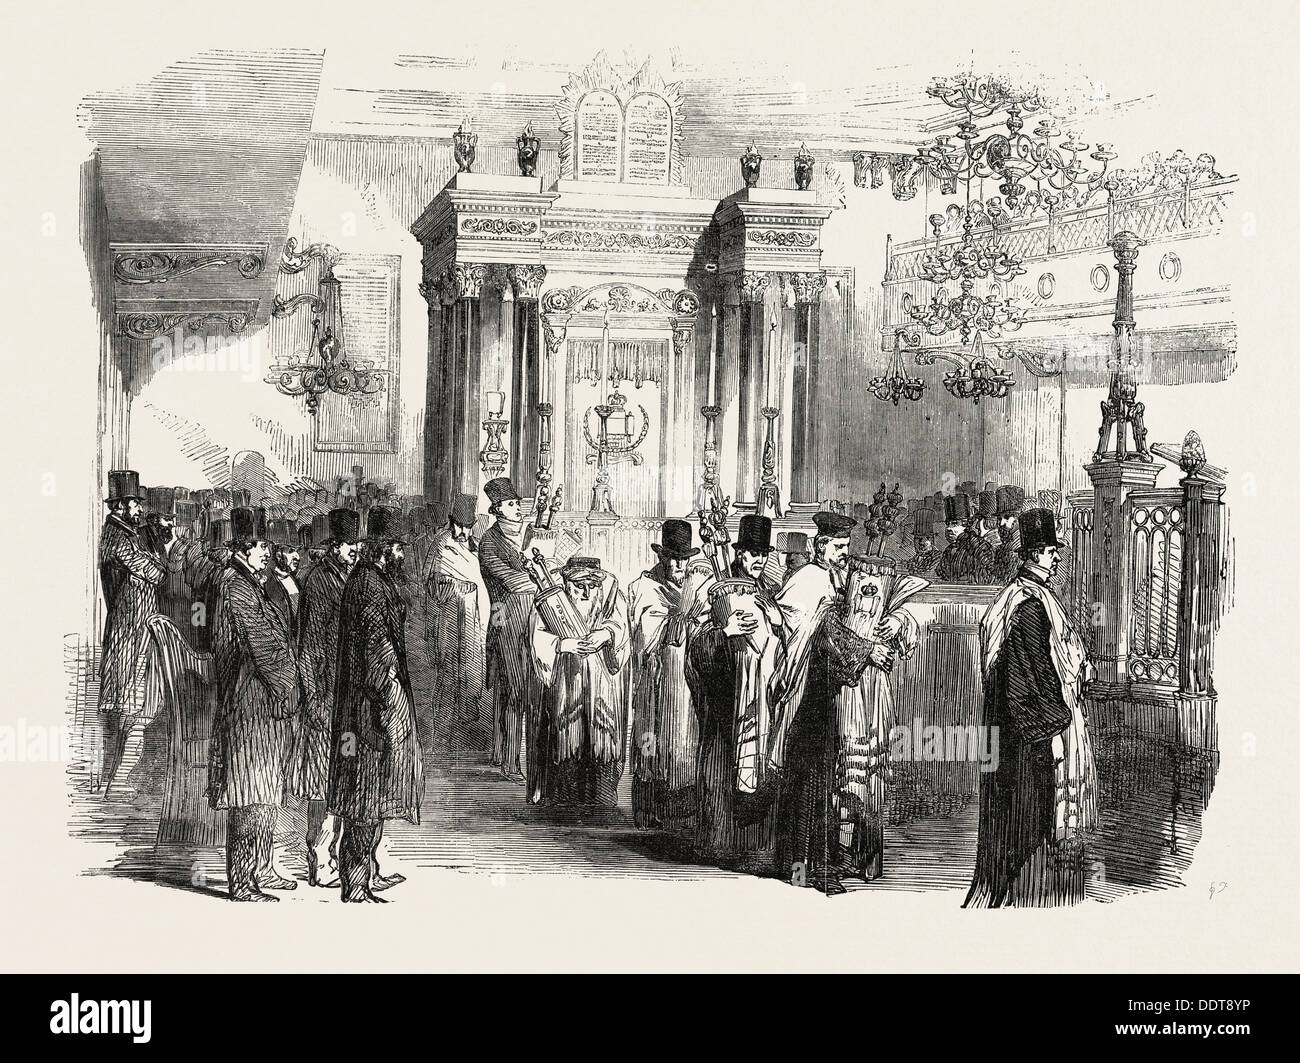 Weihe von der westlichen-Synagoge, ST. ALBANS-Platz, ST. JAMES, UK, 1851 Gravur Stockfoto